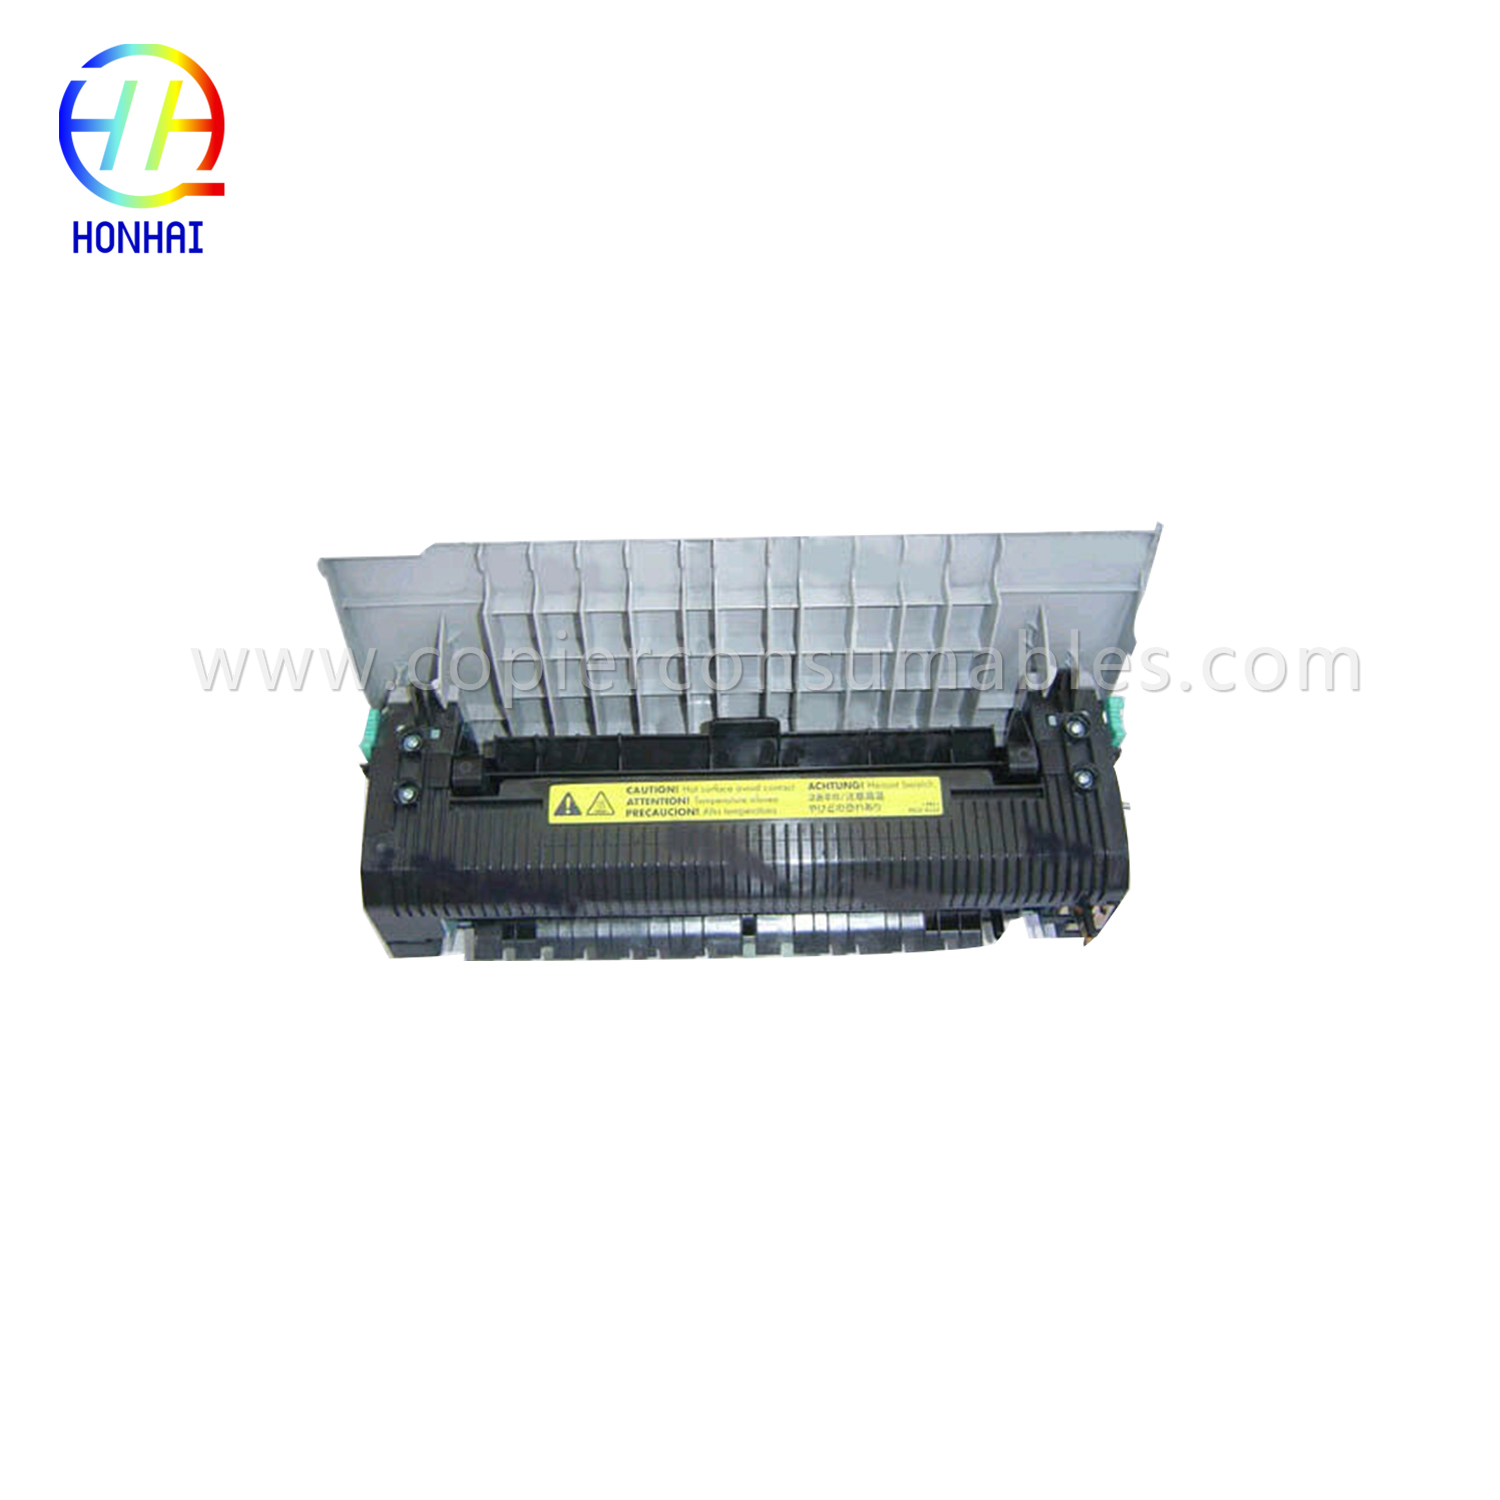 Unità fusore per HP Color LaserJet 2550 2550L 2550ln 2550n (RG5-7572-110Cn)